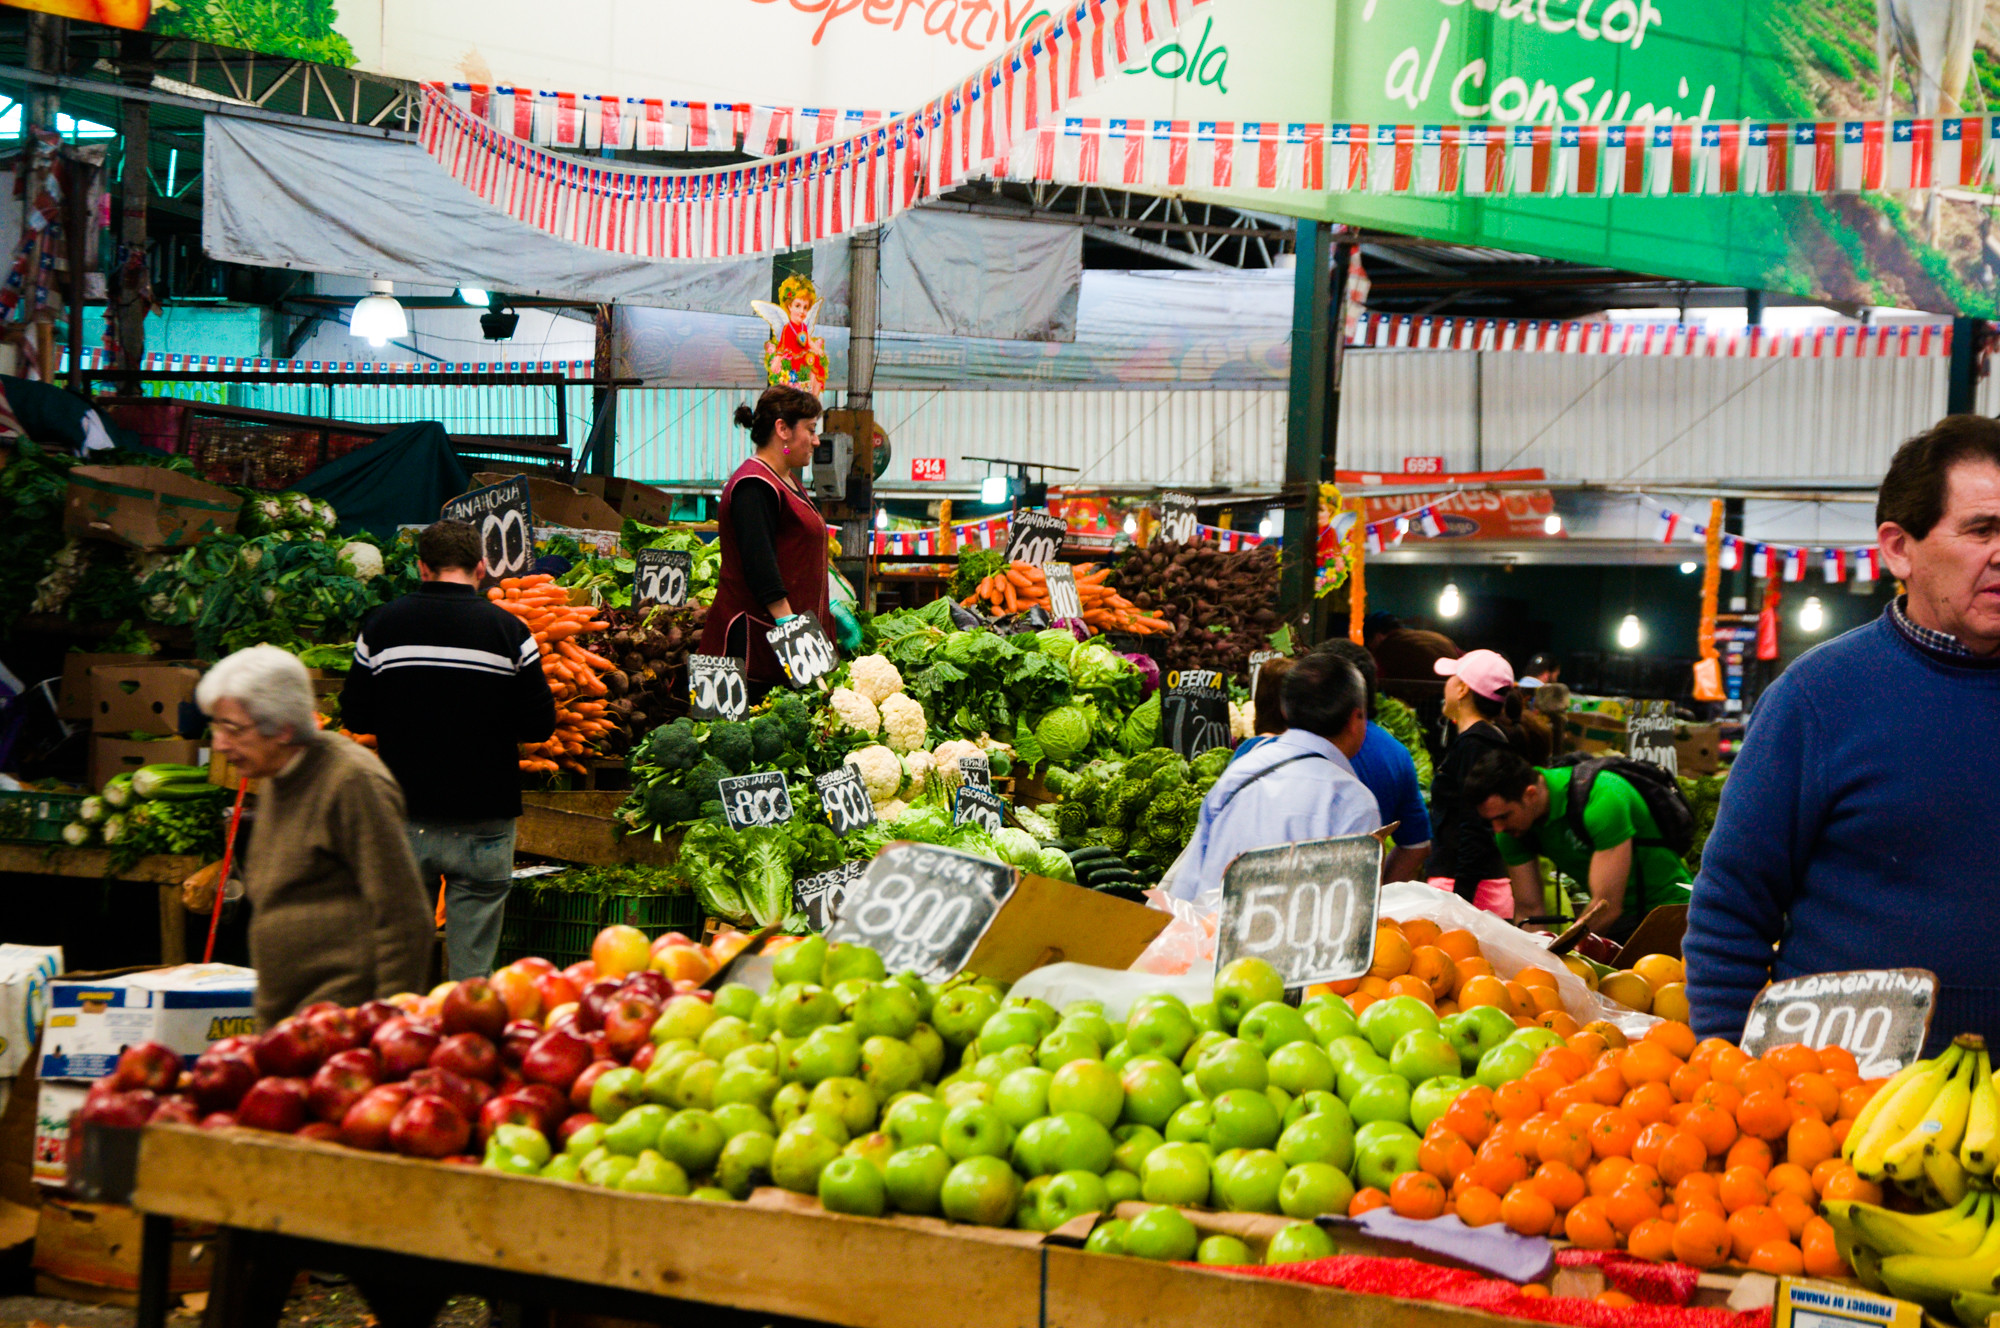 Fruit vendors in Santiago Chile